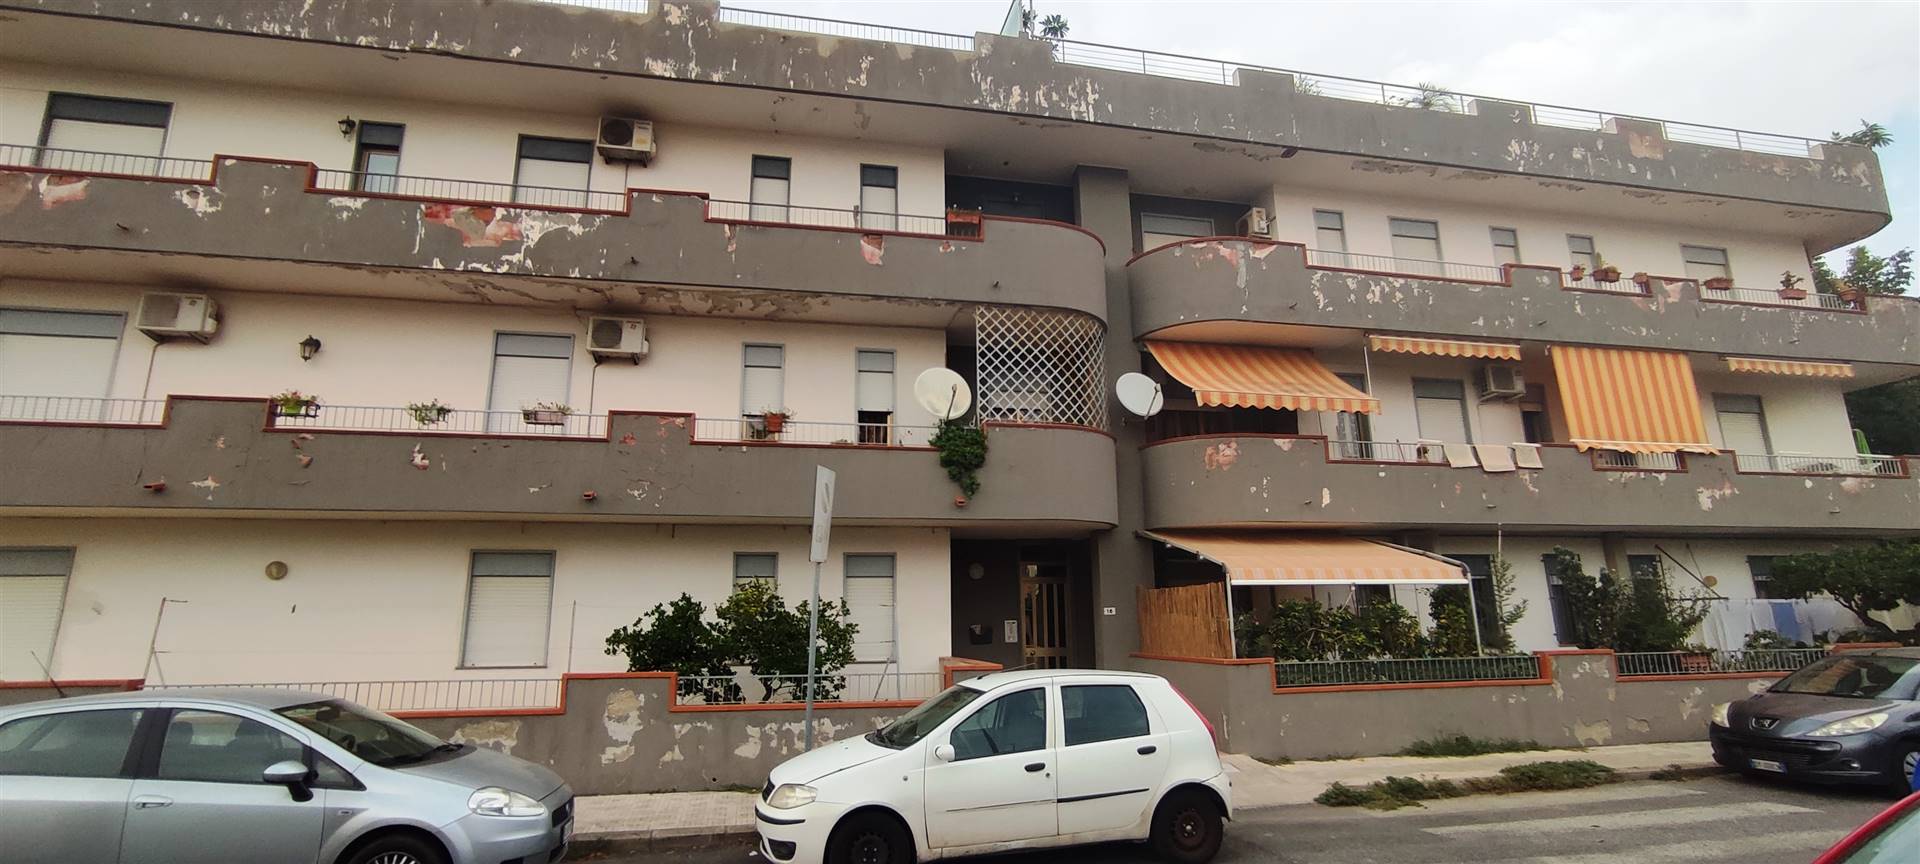 Appartamento in vendita a Pace del Mela, 3 locali, zona Località: PACE DEL MELA, prezzo € 50.000 | PortaleAgenzieImmobiliari.it